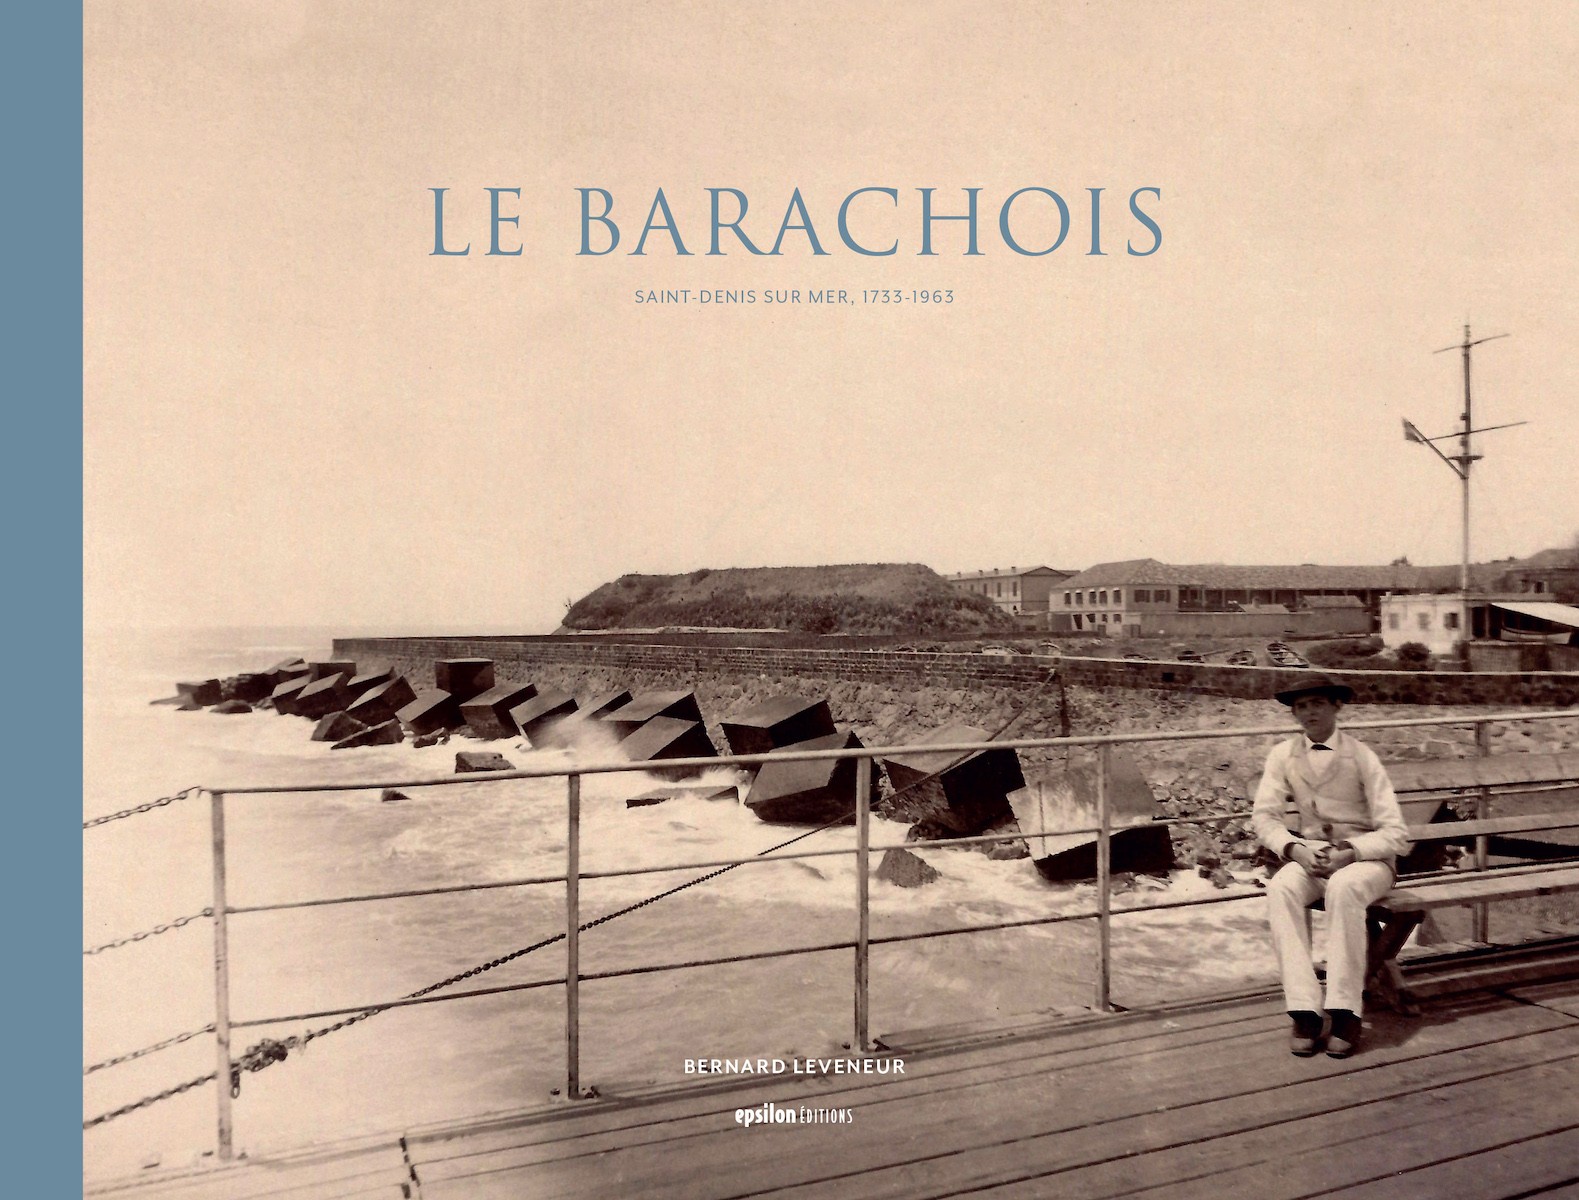 Le Barachois – Saint-Denis sur Mer, 1733-1963